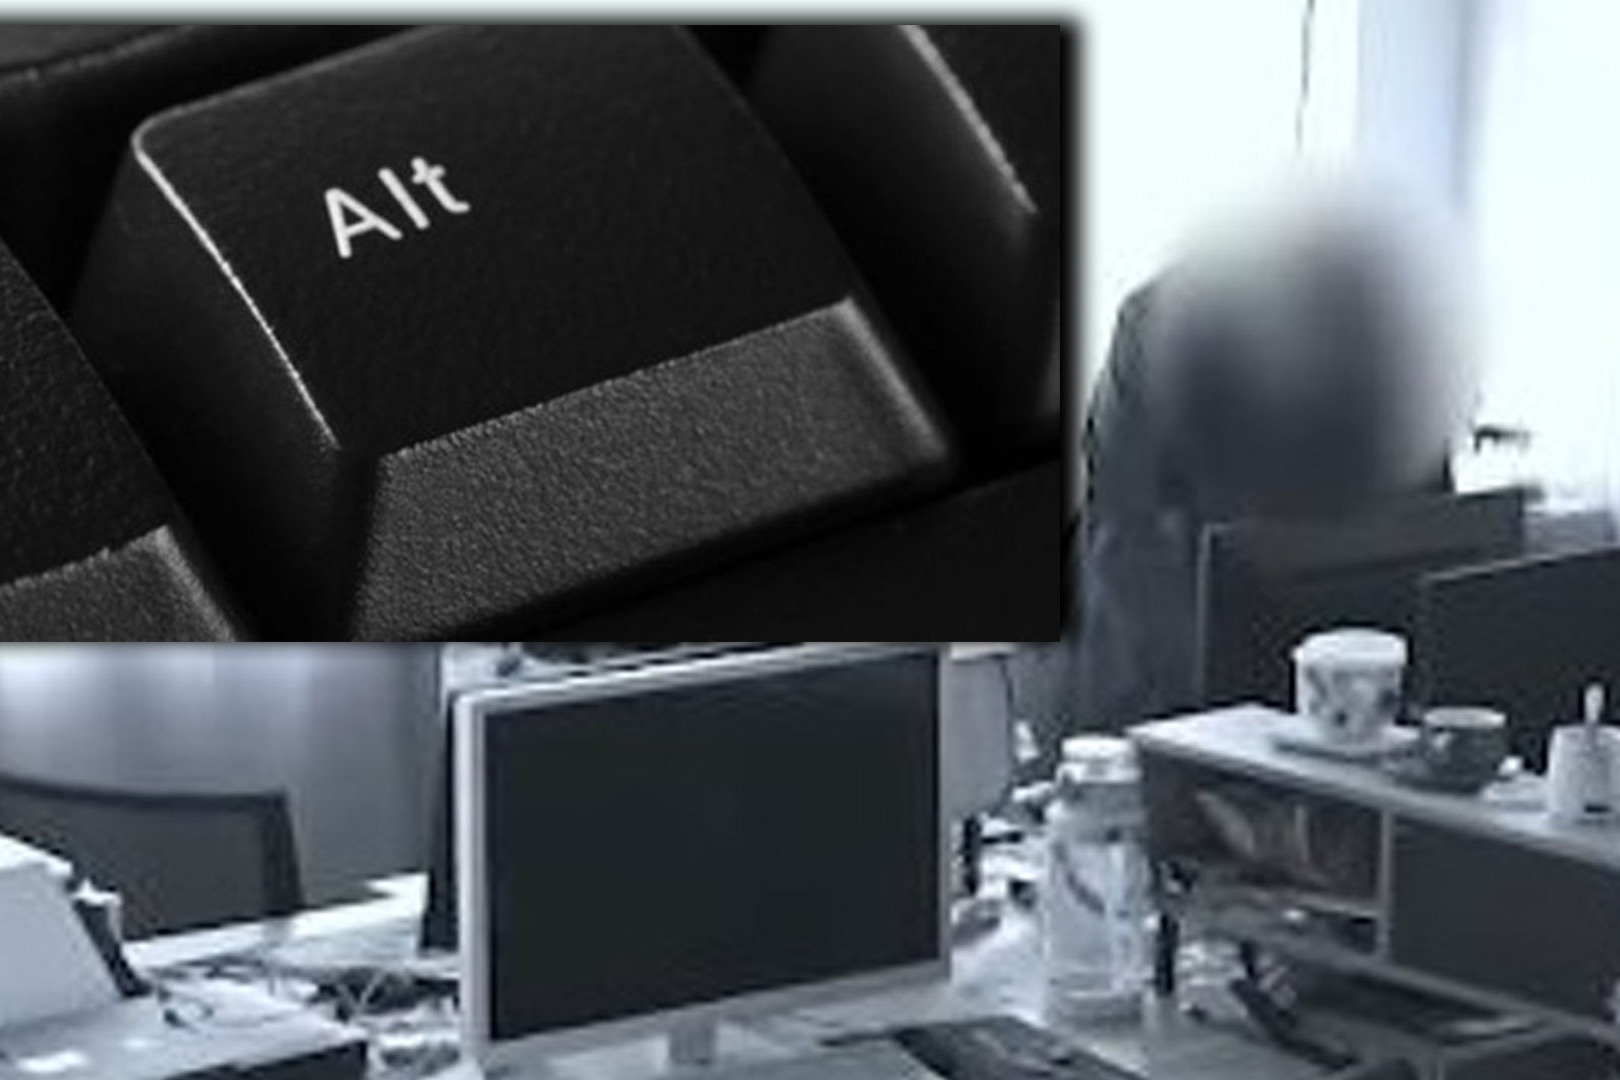 全公司鍵盤「Alt」一夜消失
 閉路電視驚揭小偷竟是老闆